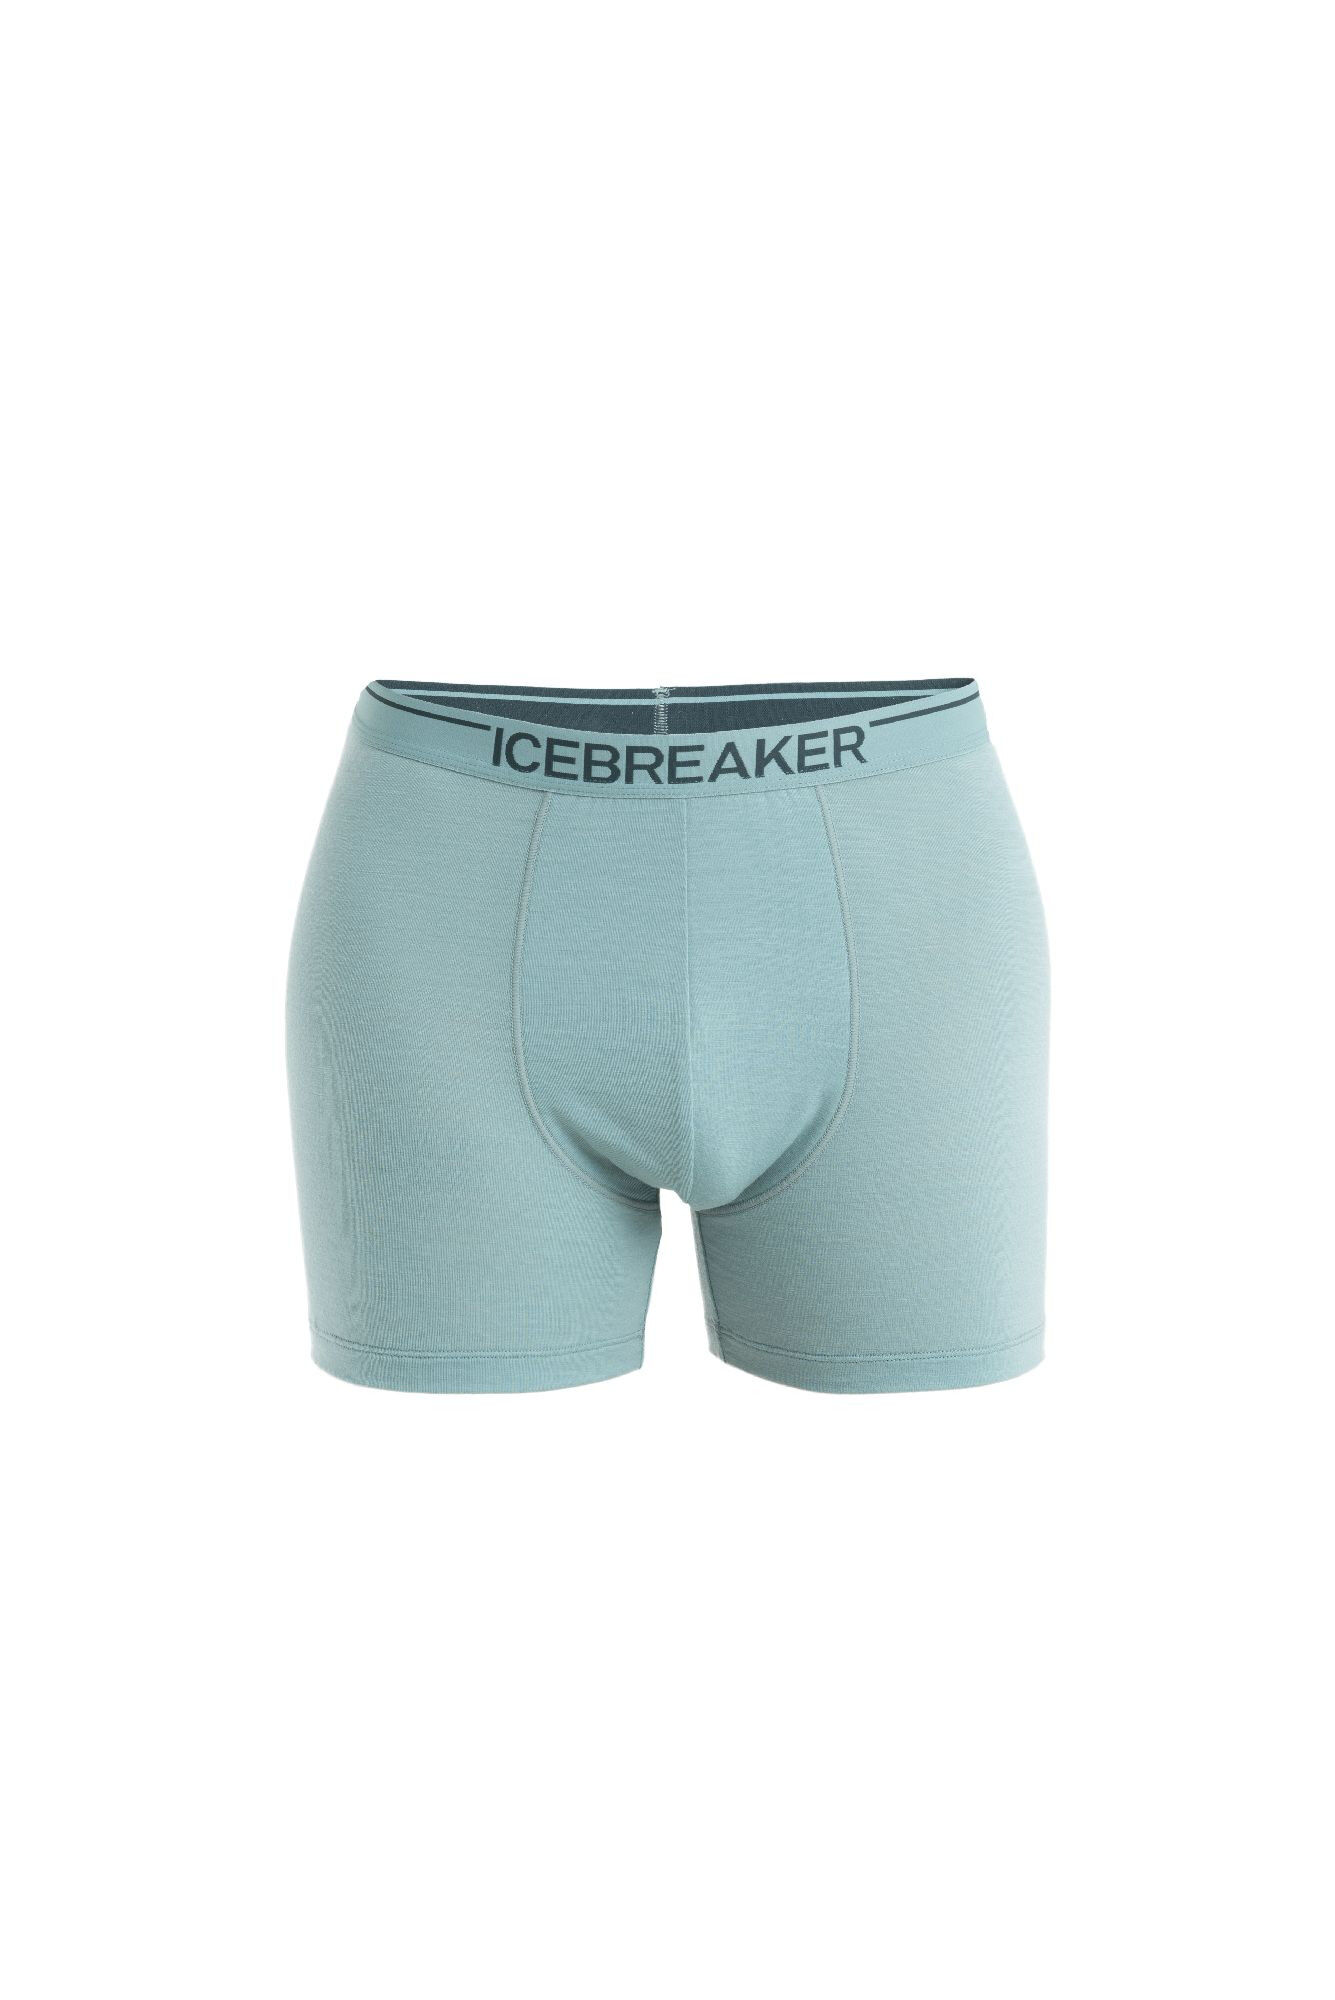 Icebreaker - Anatomica Boxers - Mutande da uomo